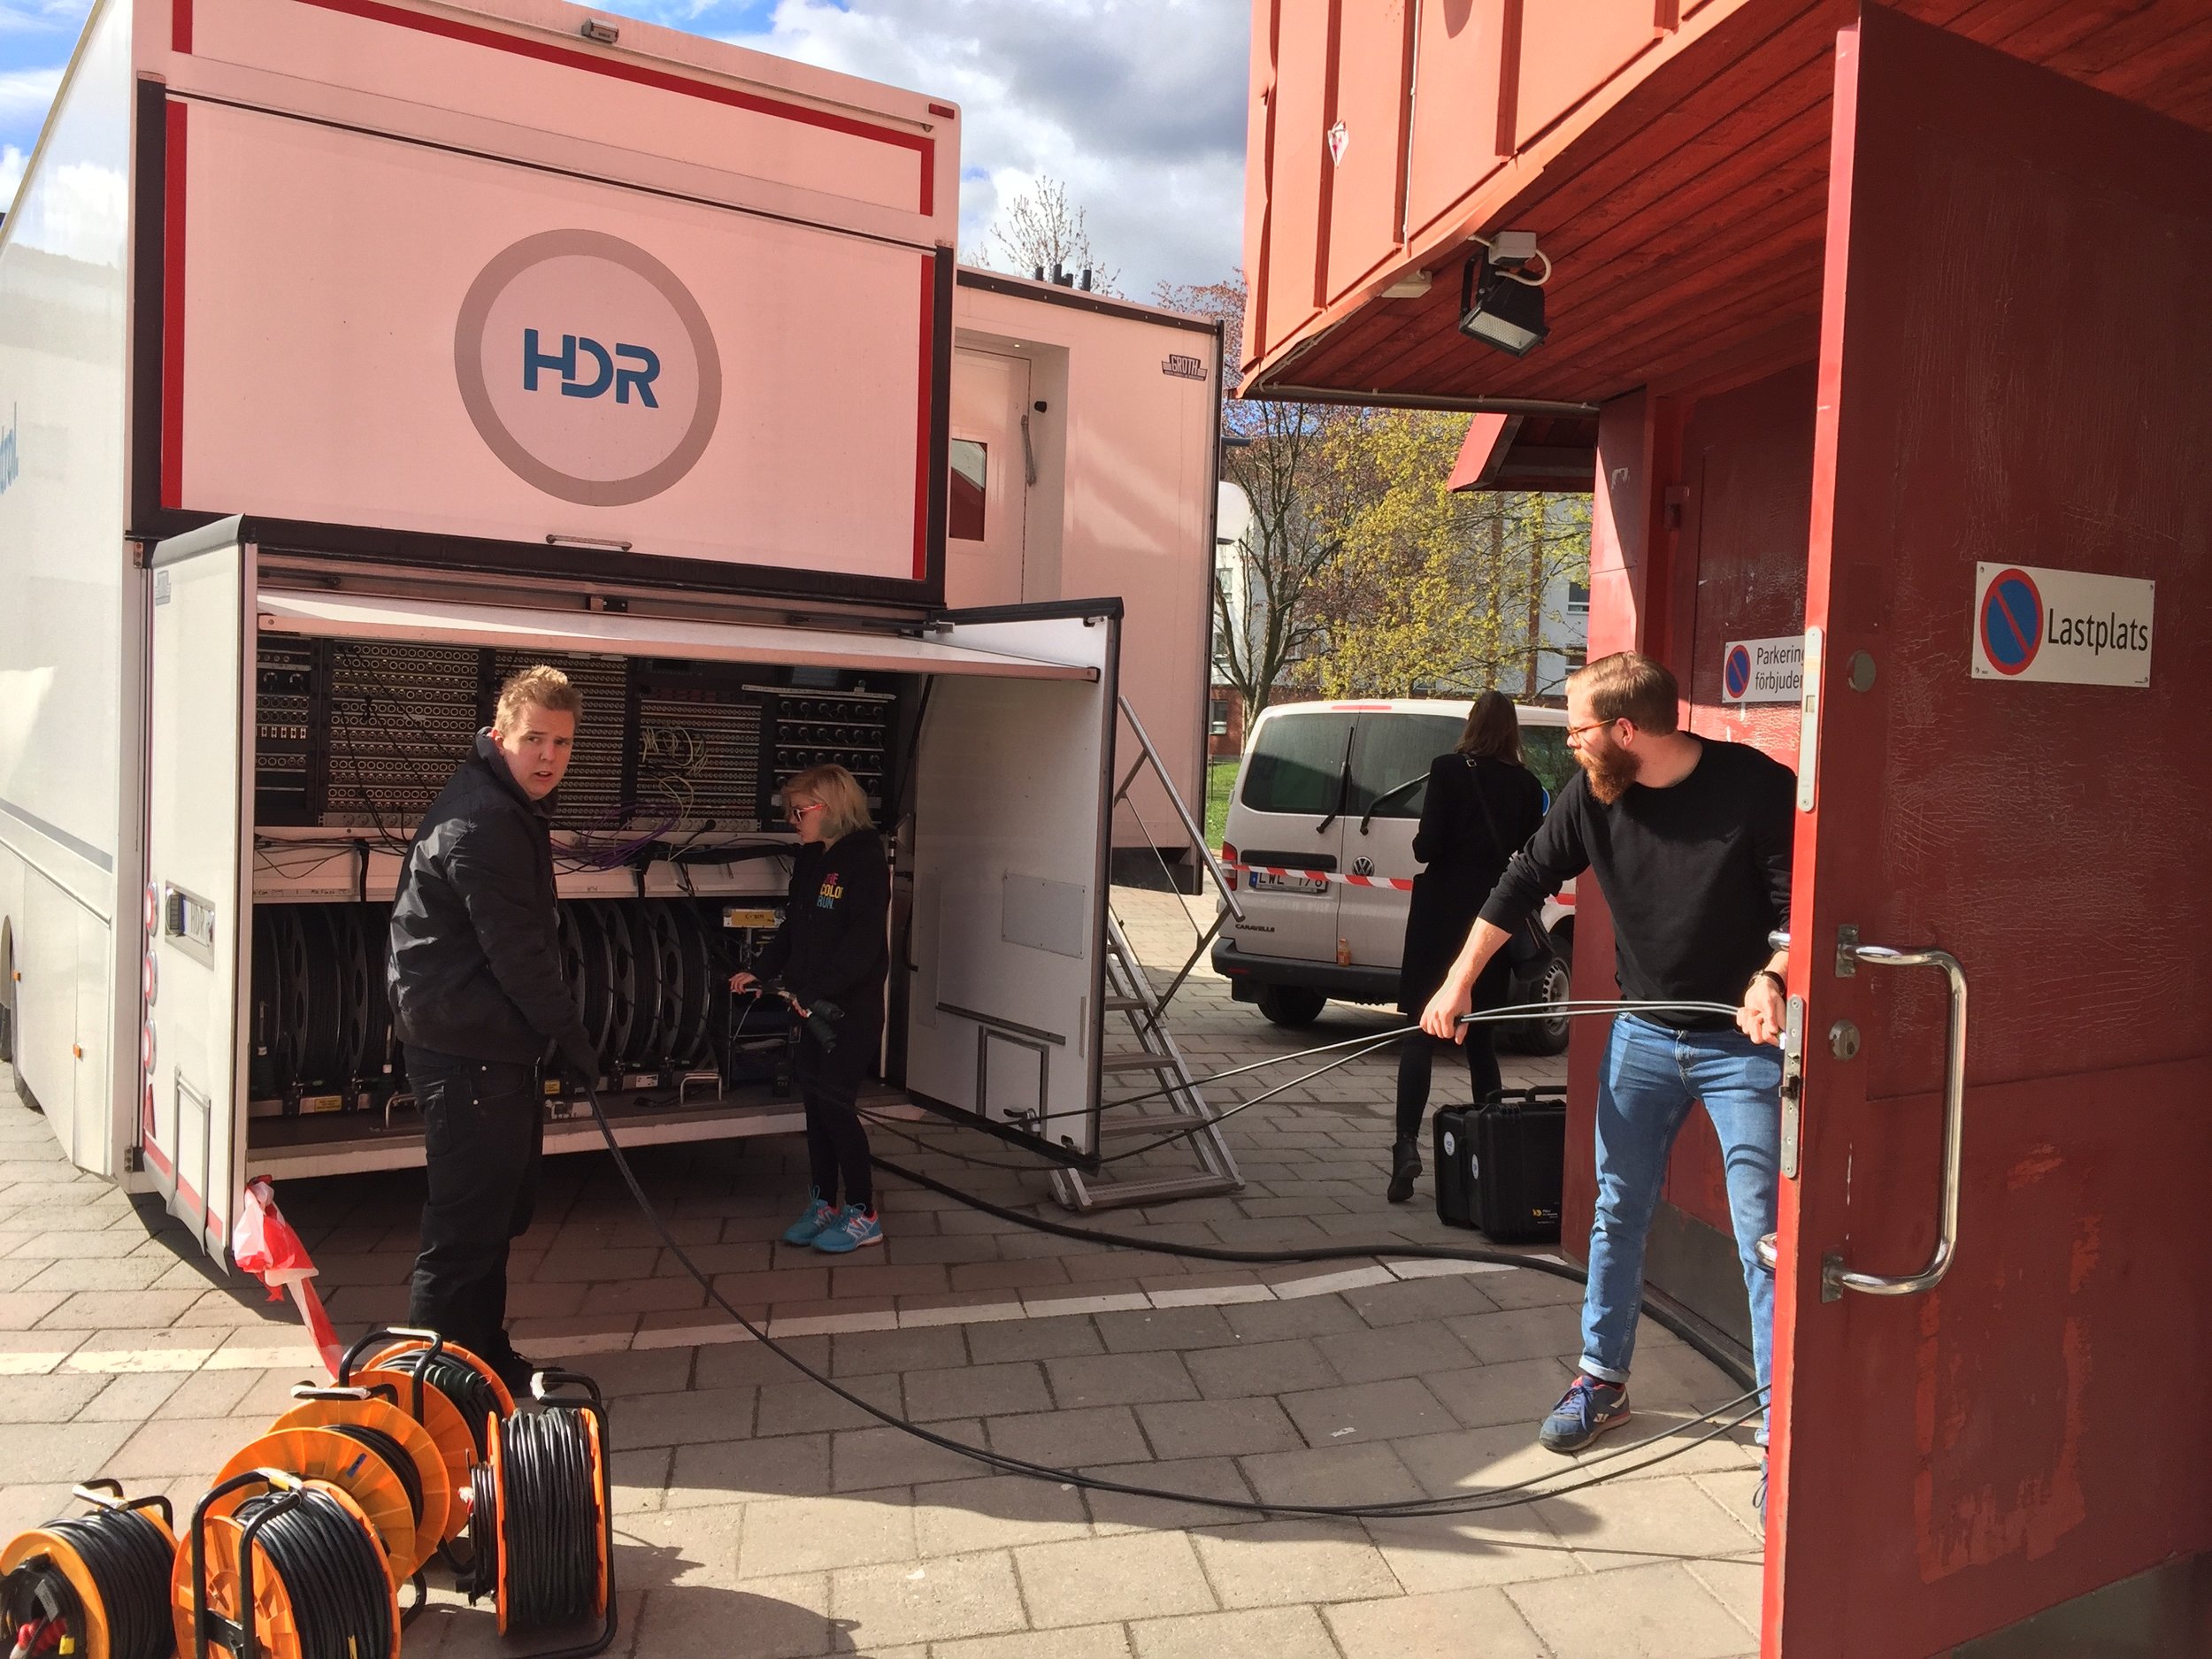  Sebastian Hyyrynen och Elin Fischer får prova på att arbeta som TOM (Technical Operations Manager) under övning med HD Resources OB-buss under musikproduktion på Tumbascenen. Anton Sundling, som gick ut utbildningen 2014 och i dag jobbar som TOM på 